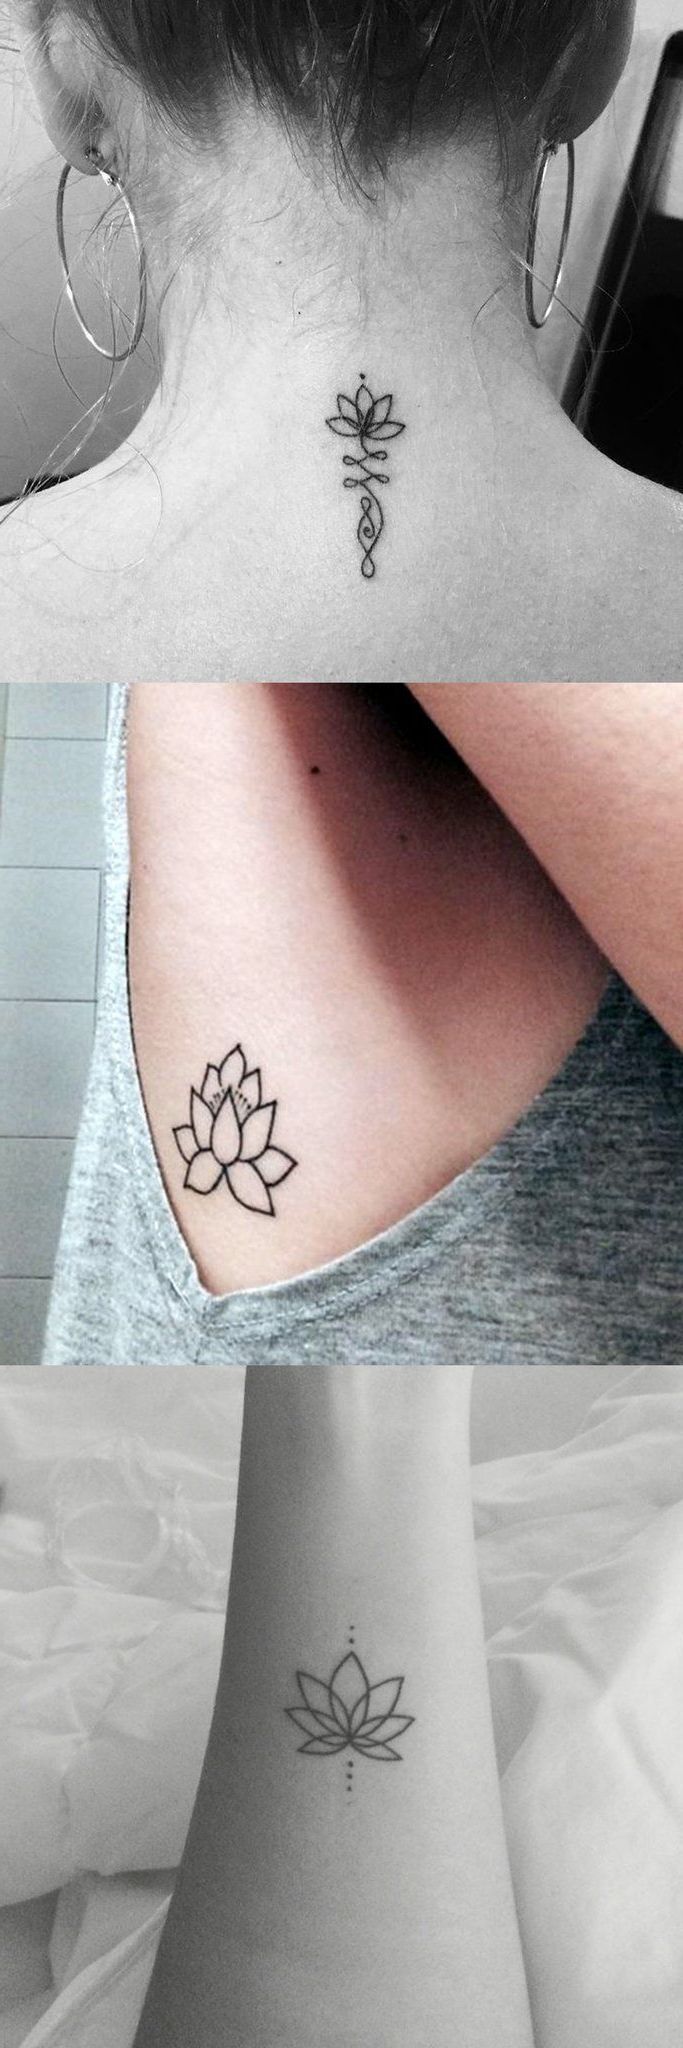 Lotusblume Tattoo: die beliebteste florale T?towierung hat zahlreiche Bedeutungen -   17 tatuajes lotus tattoo
 ideas